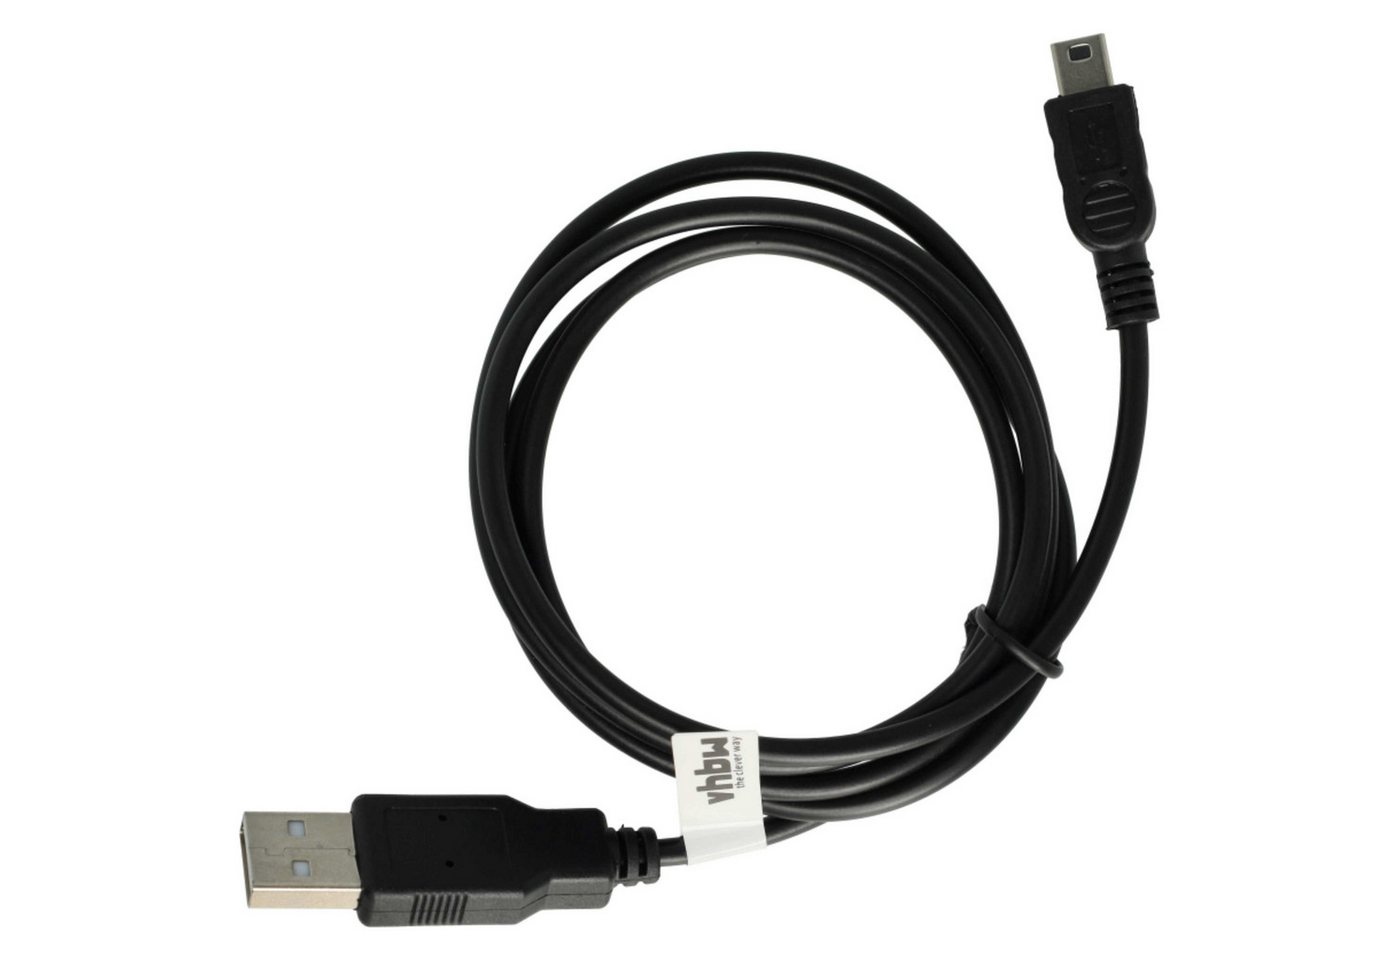 vhbw passend für Pentax A30, A20, A10, 555, 750Z, 550, 60, 50, E10 Kamera / USB-Kabel von vhbw